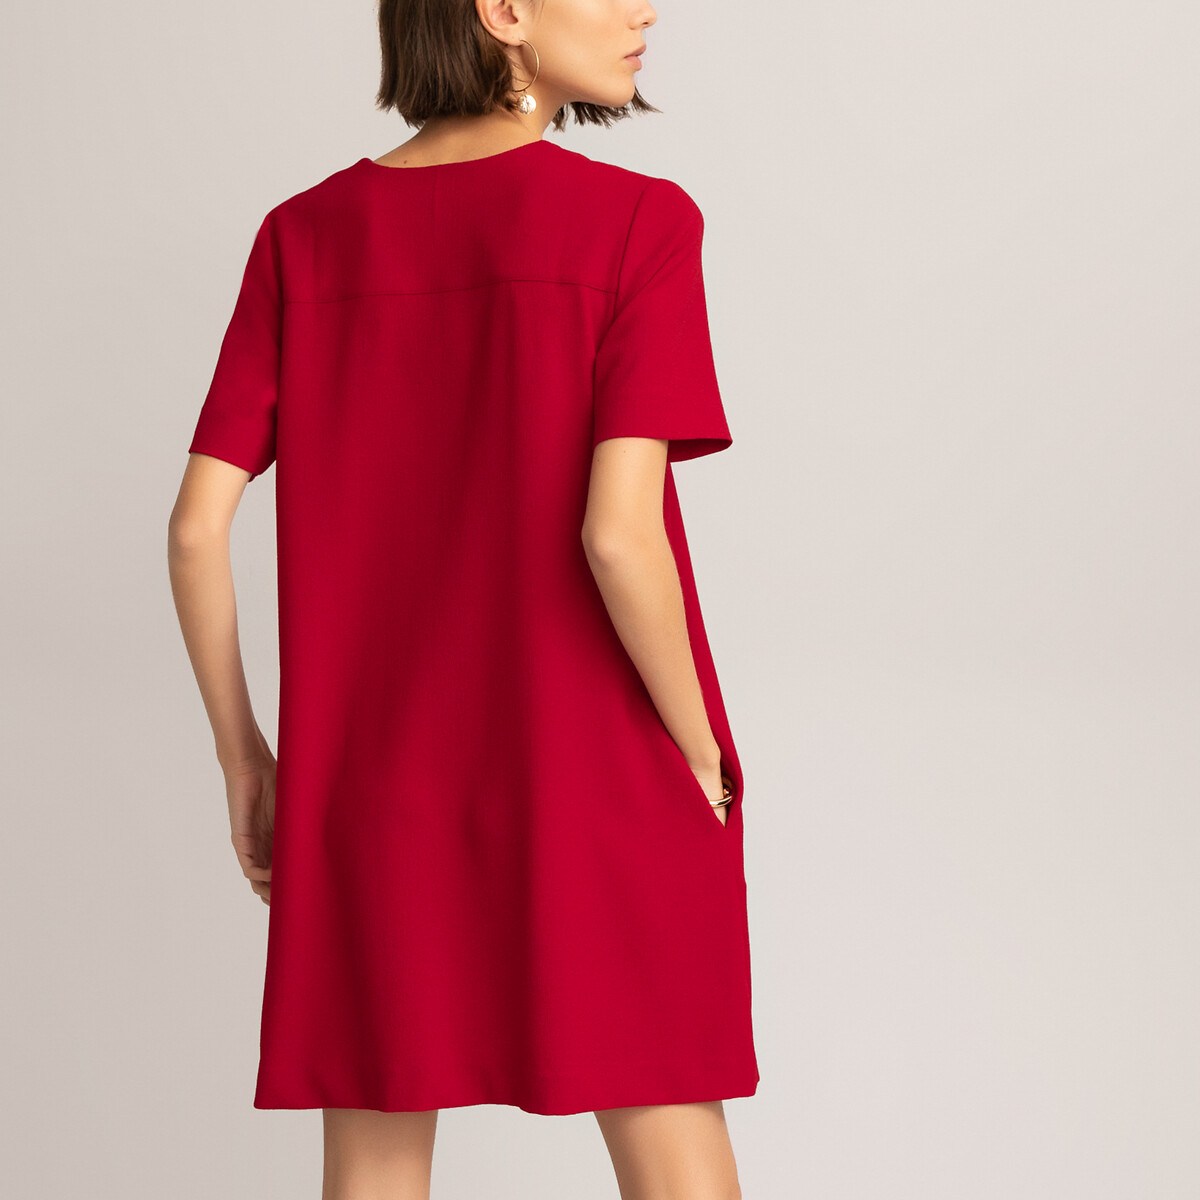 Расклешенное La Redoute Платье с V-образным вырезом и коротким рукавом 42 (FR) - 48 (RUS) красный, размер 42 (FR) - 48 (RUS) Платье с V-образным вырезом и коротким рукавом 42 (FR) - 48 (RUS) красный - фото 4